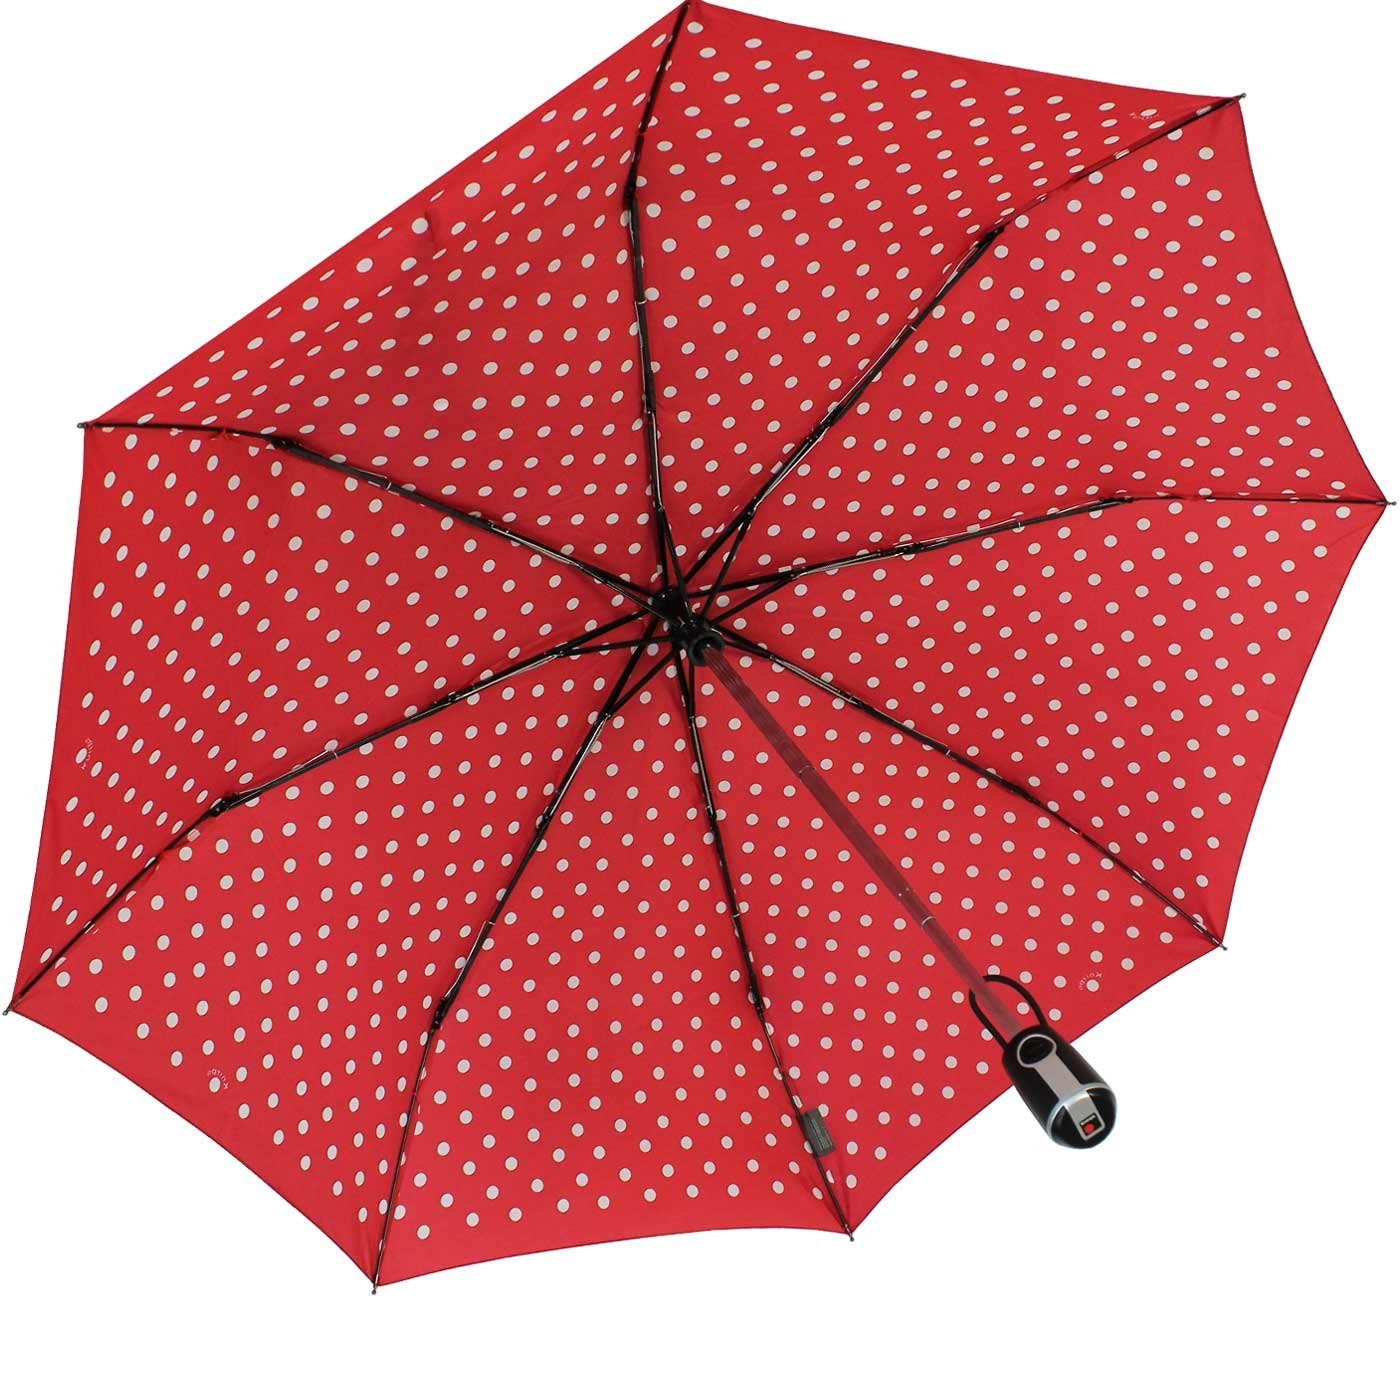 mit Dots, Auf-Zu-Automatik rot-weiß Taschenregenschirm Begleiter Duomatic Large der Polka - große, stabile Knirps®